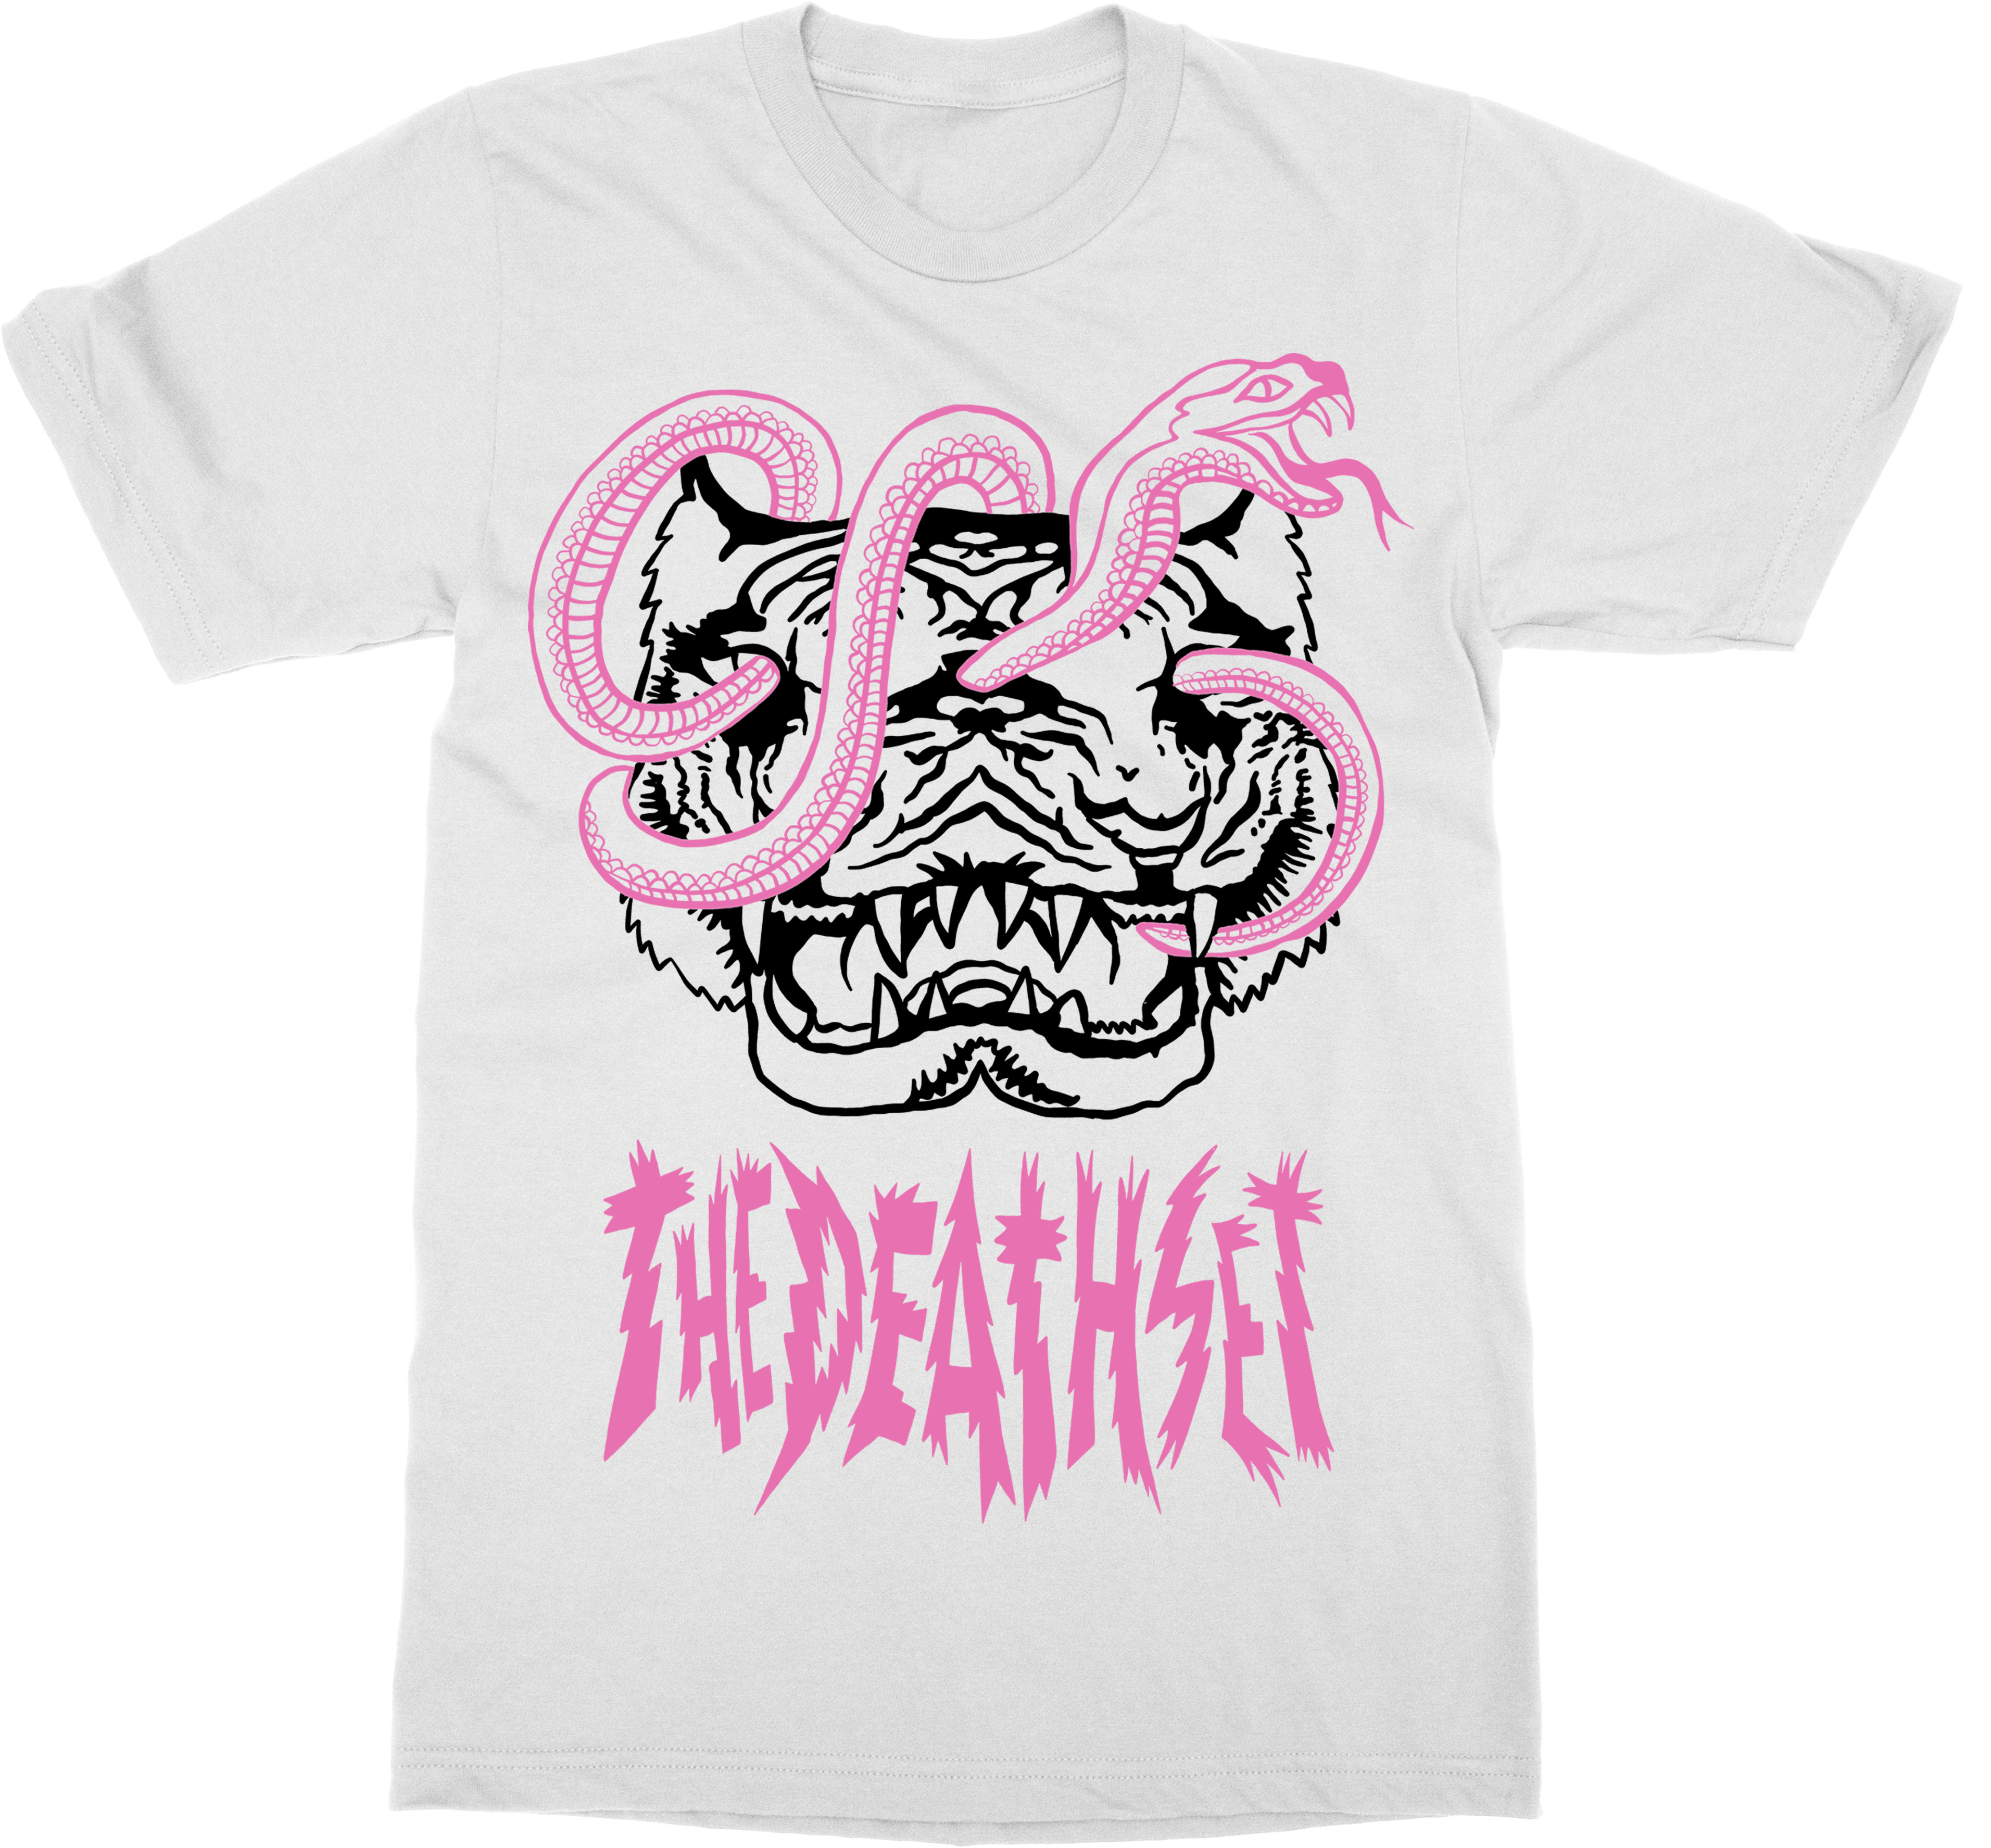 The Death Set | Tiger Snake T-Shirt